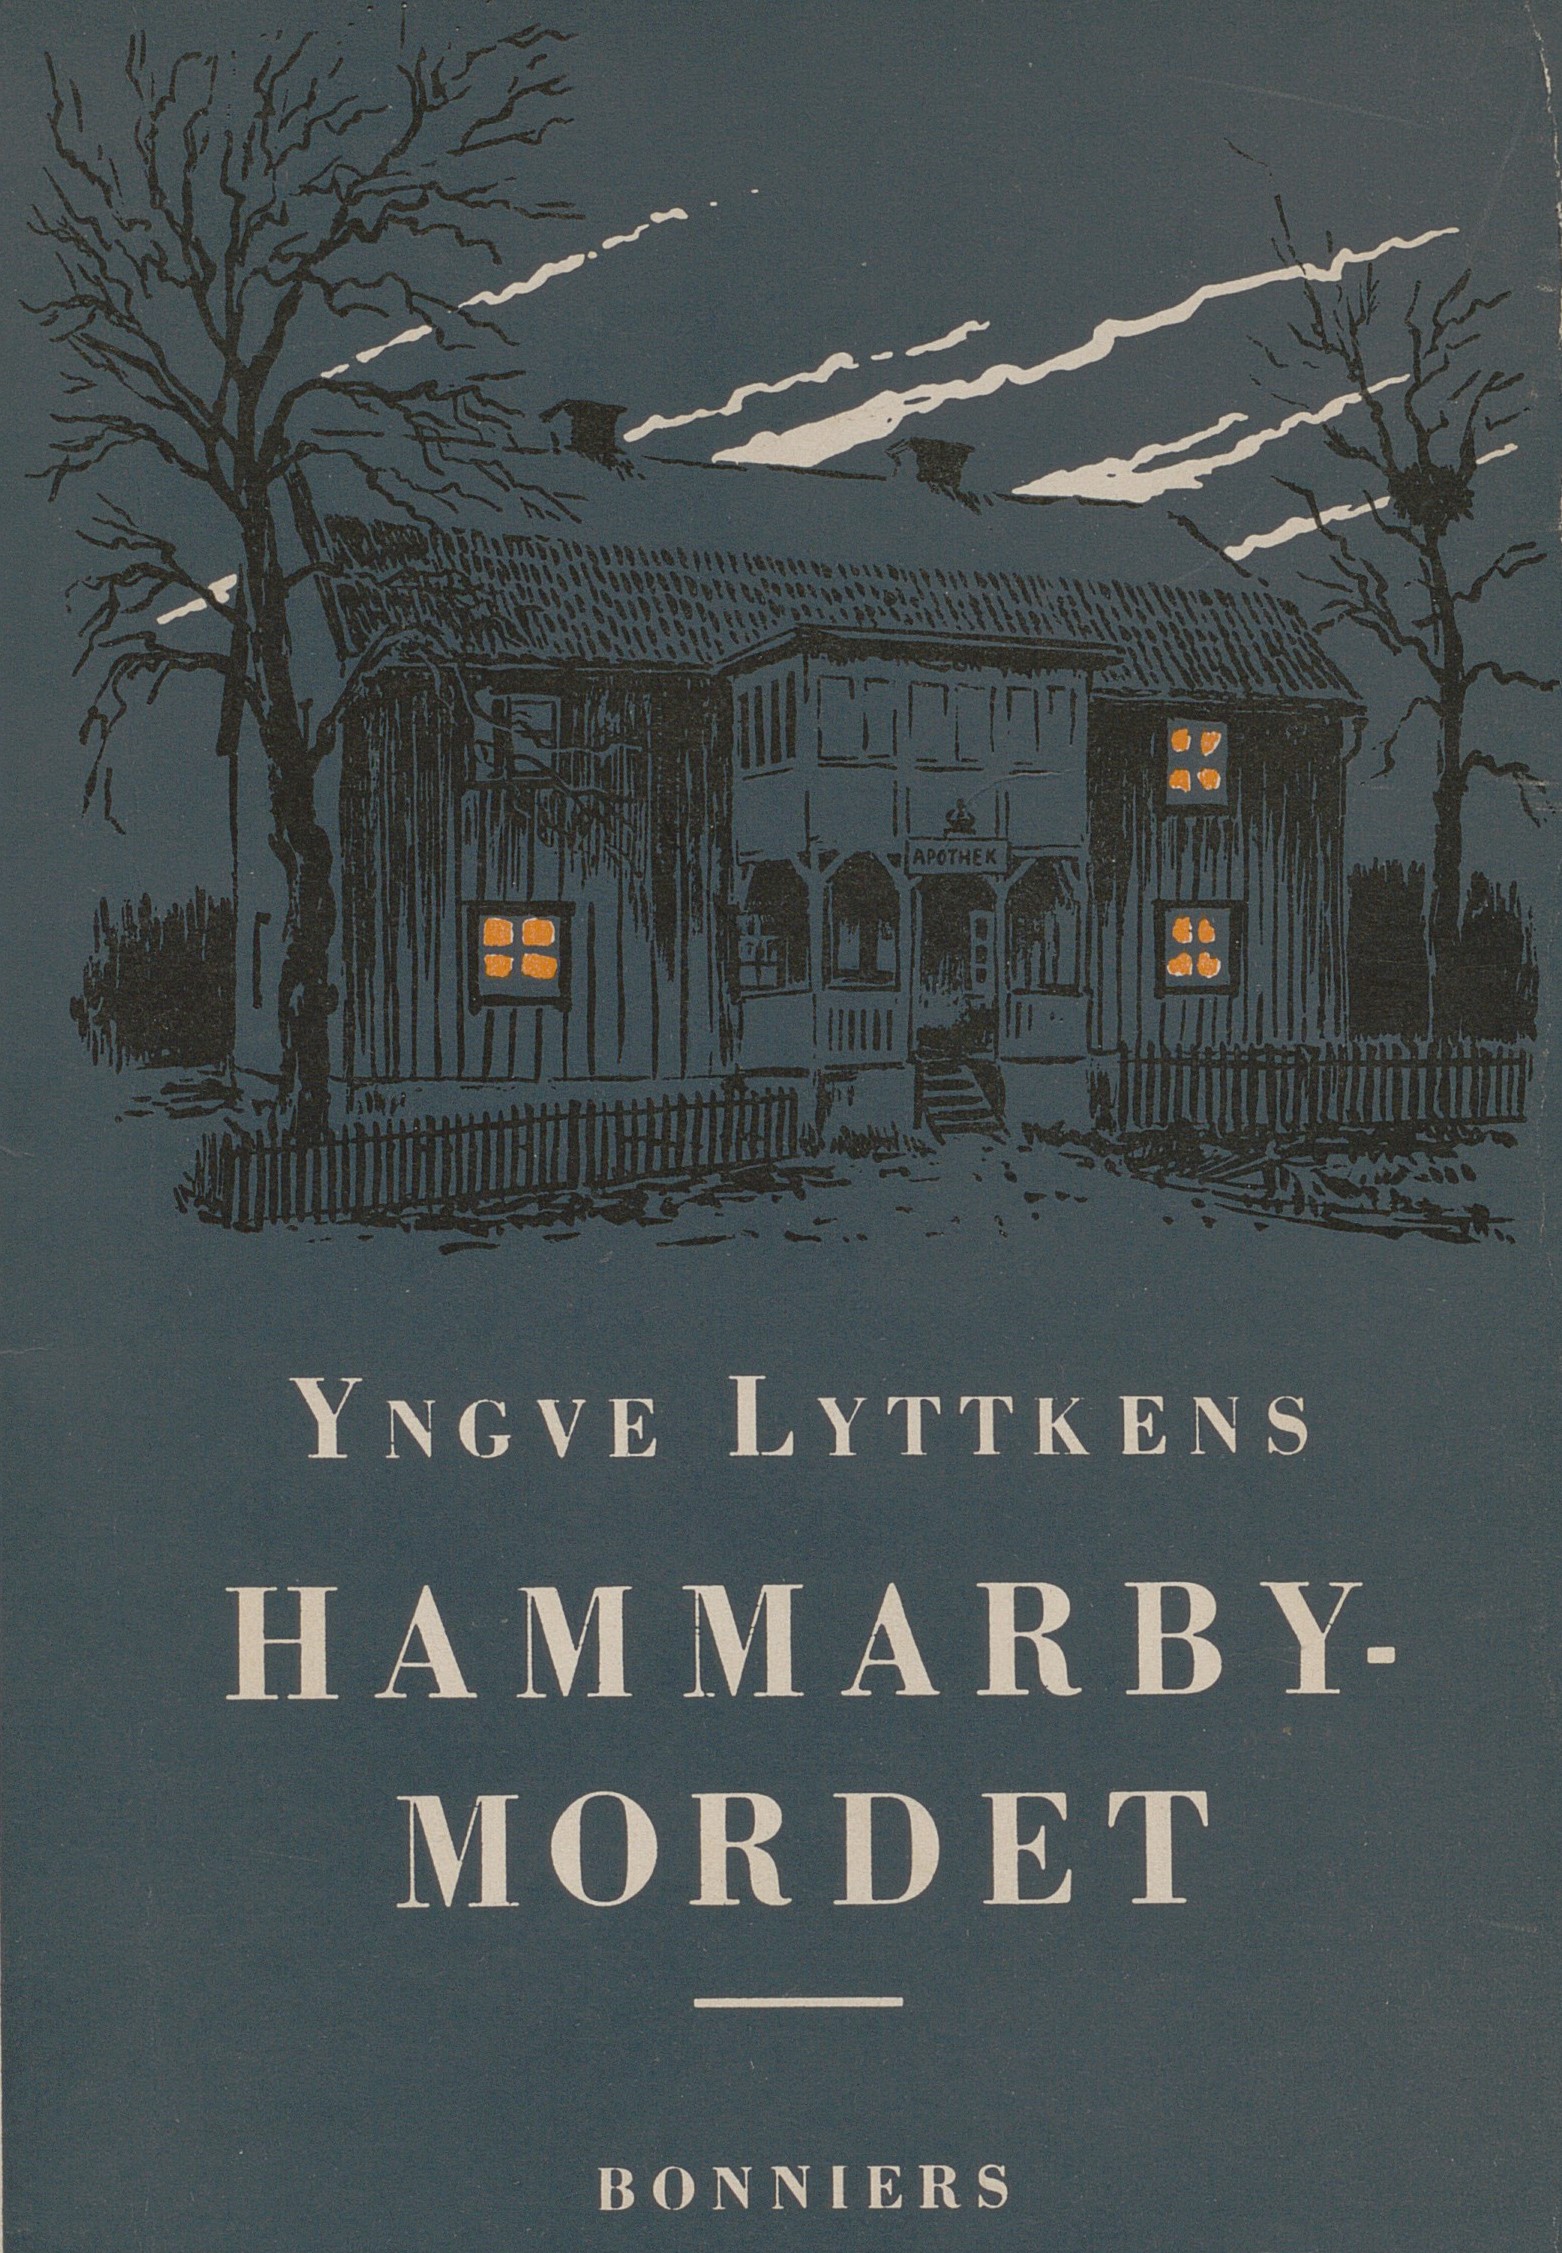 Bokomslag med hus i mörker, ur några fönster lyser det. Text: Hammarbymordet.